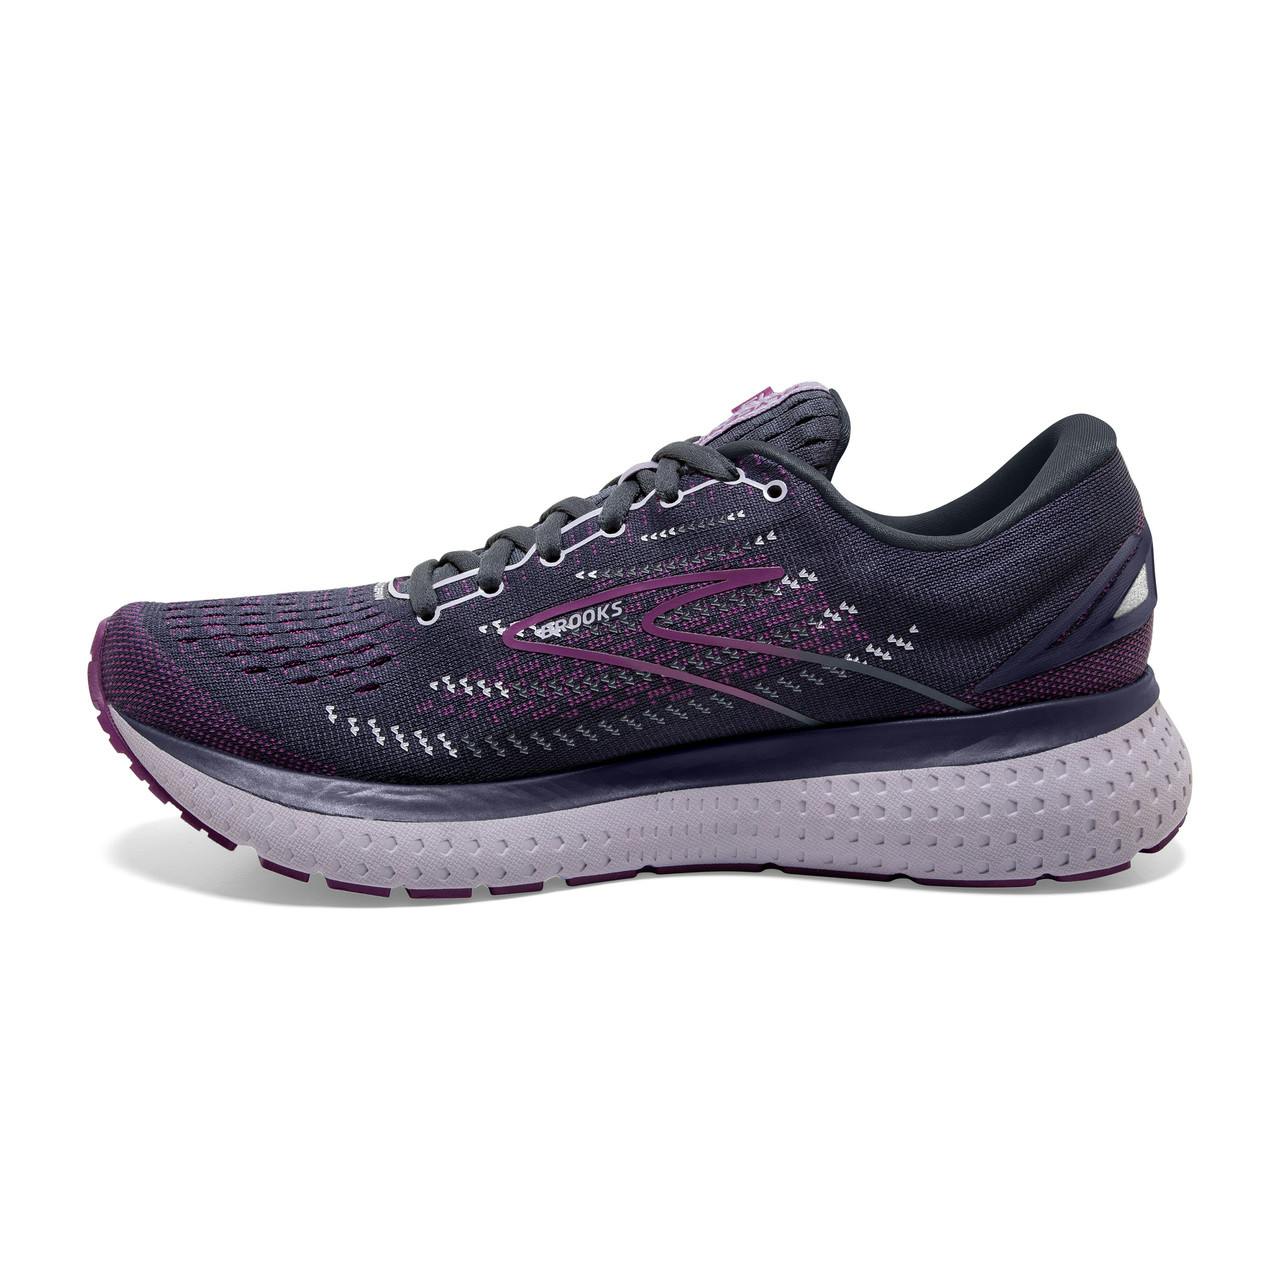 Glycerin 19 Road Running Shoes Ombre/Violet/Lavender